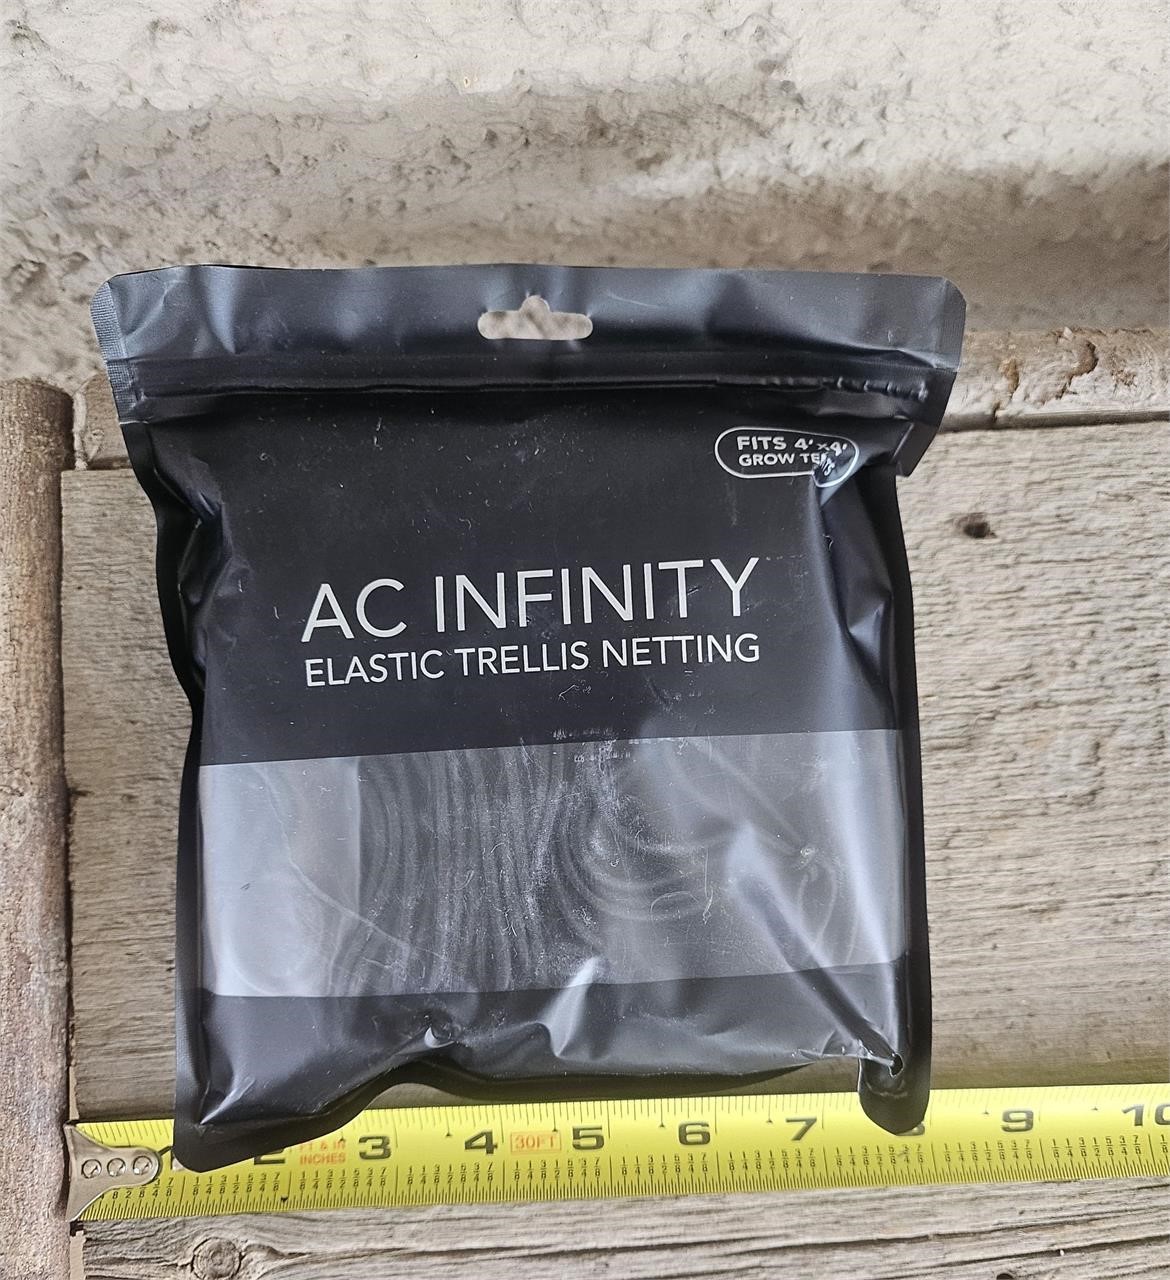 AC Infinity Elastic Trellis Netting